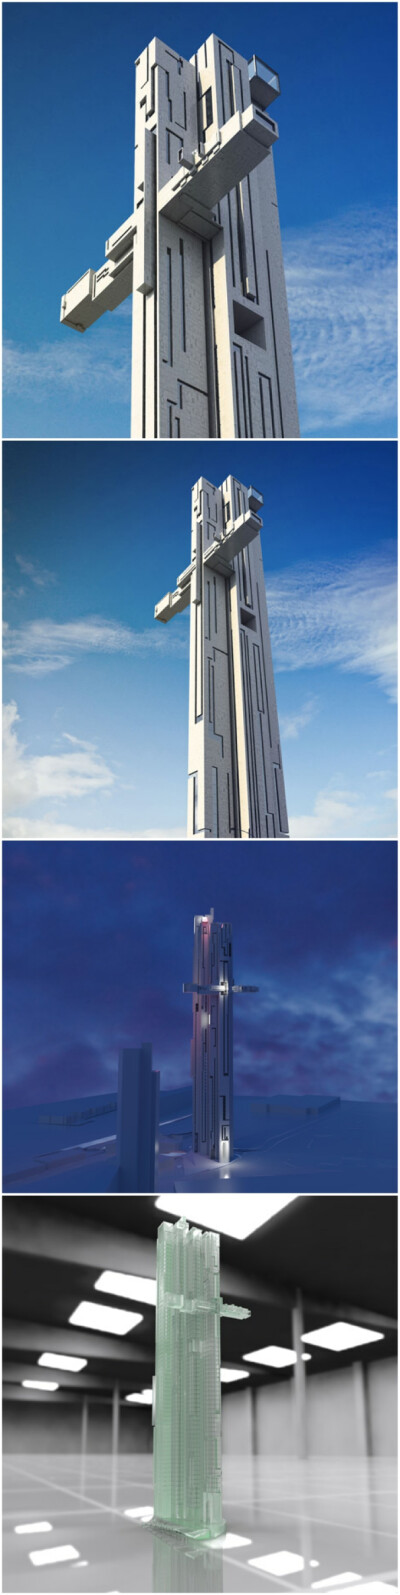 建筑师Maurice Shapero在英国利物浦的海边设计了一座十字架造型的摩天大楼，高近200米，共67层，建成后将成为该市最高的建筑。该楼最大的特点是在接近顶部的两侧有两个伸出的悬臂，形成一个长长的餐厅，届时人们可以…